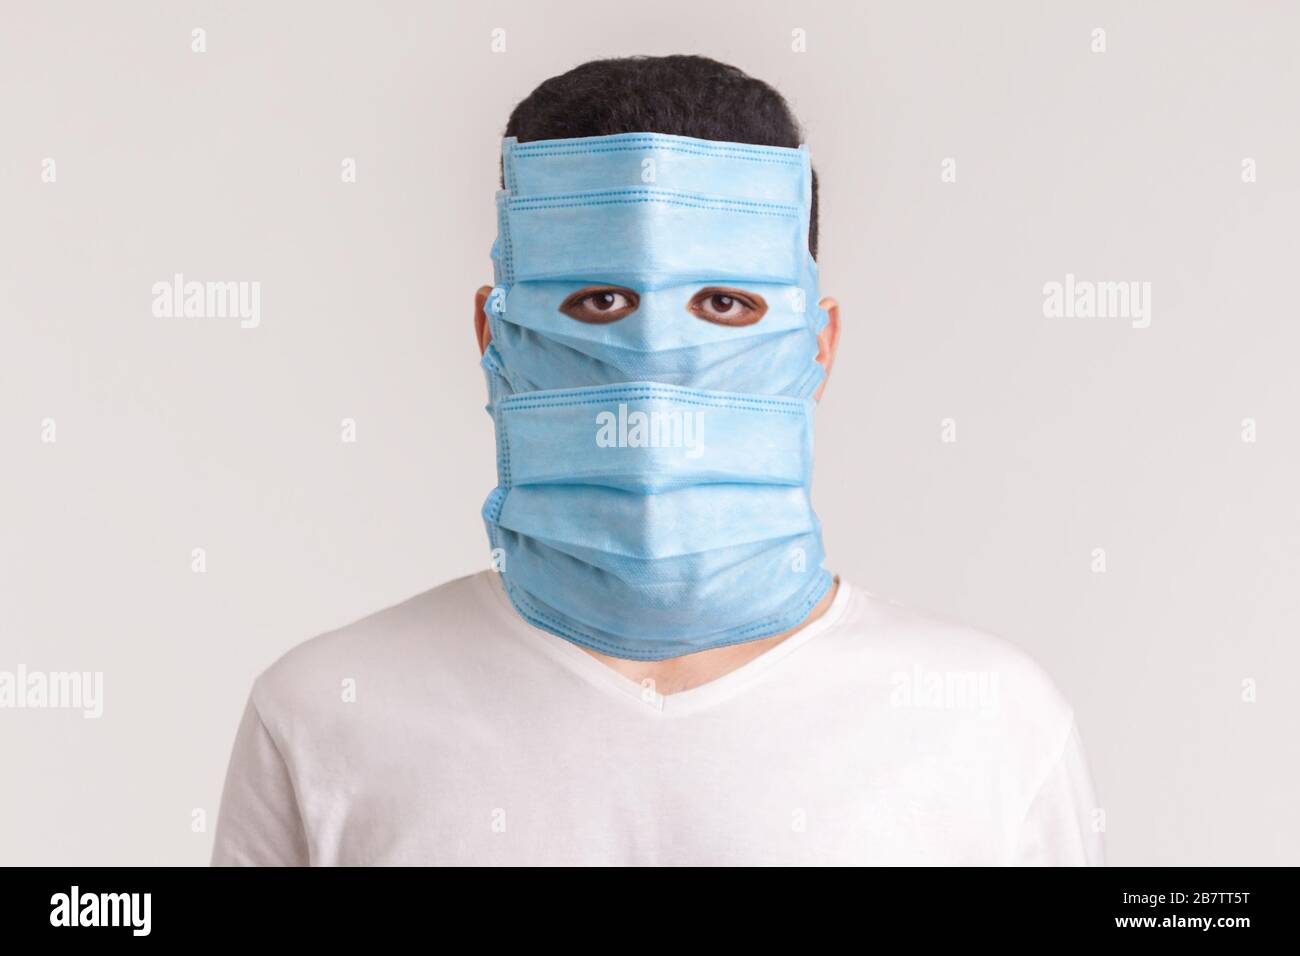 Protezione contro le malattie contagiose, il coronavirus. Uomo che indossa una maschera igienica per prevenire infezioni, malattie respiratorie aeree come l'influenza, 2019-NCO Foto Stock